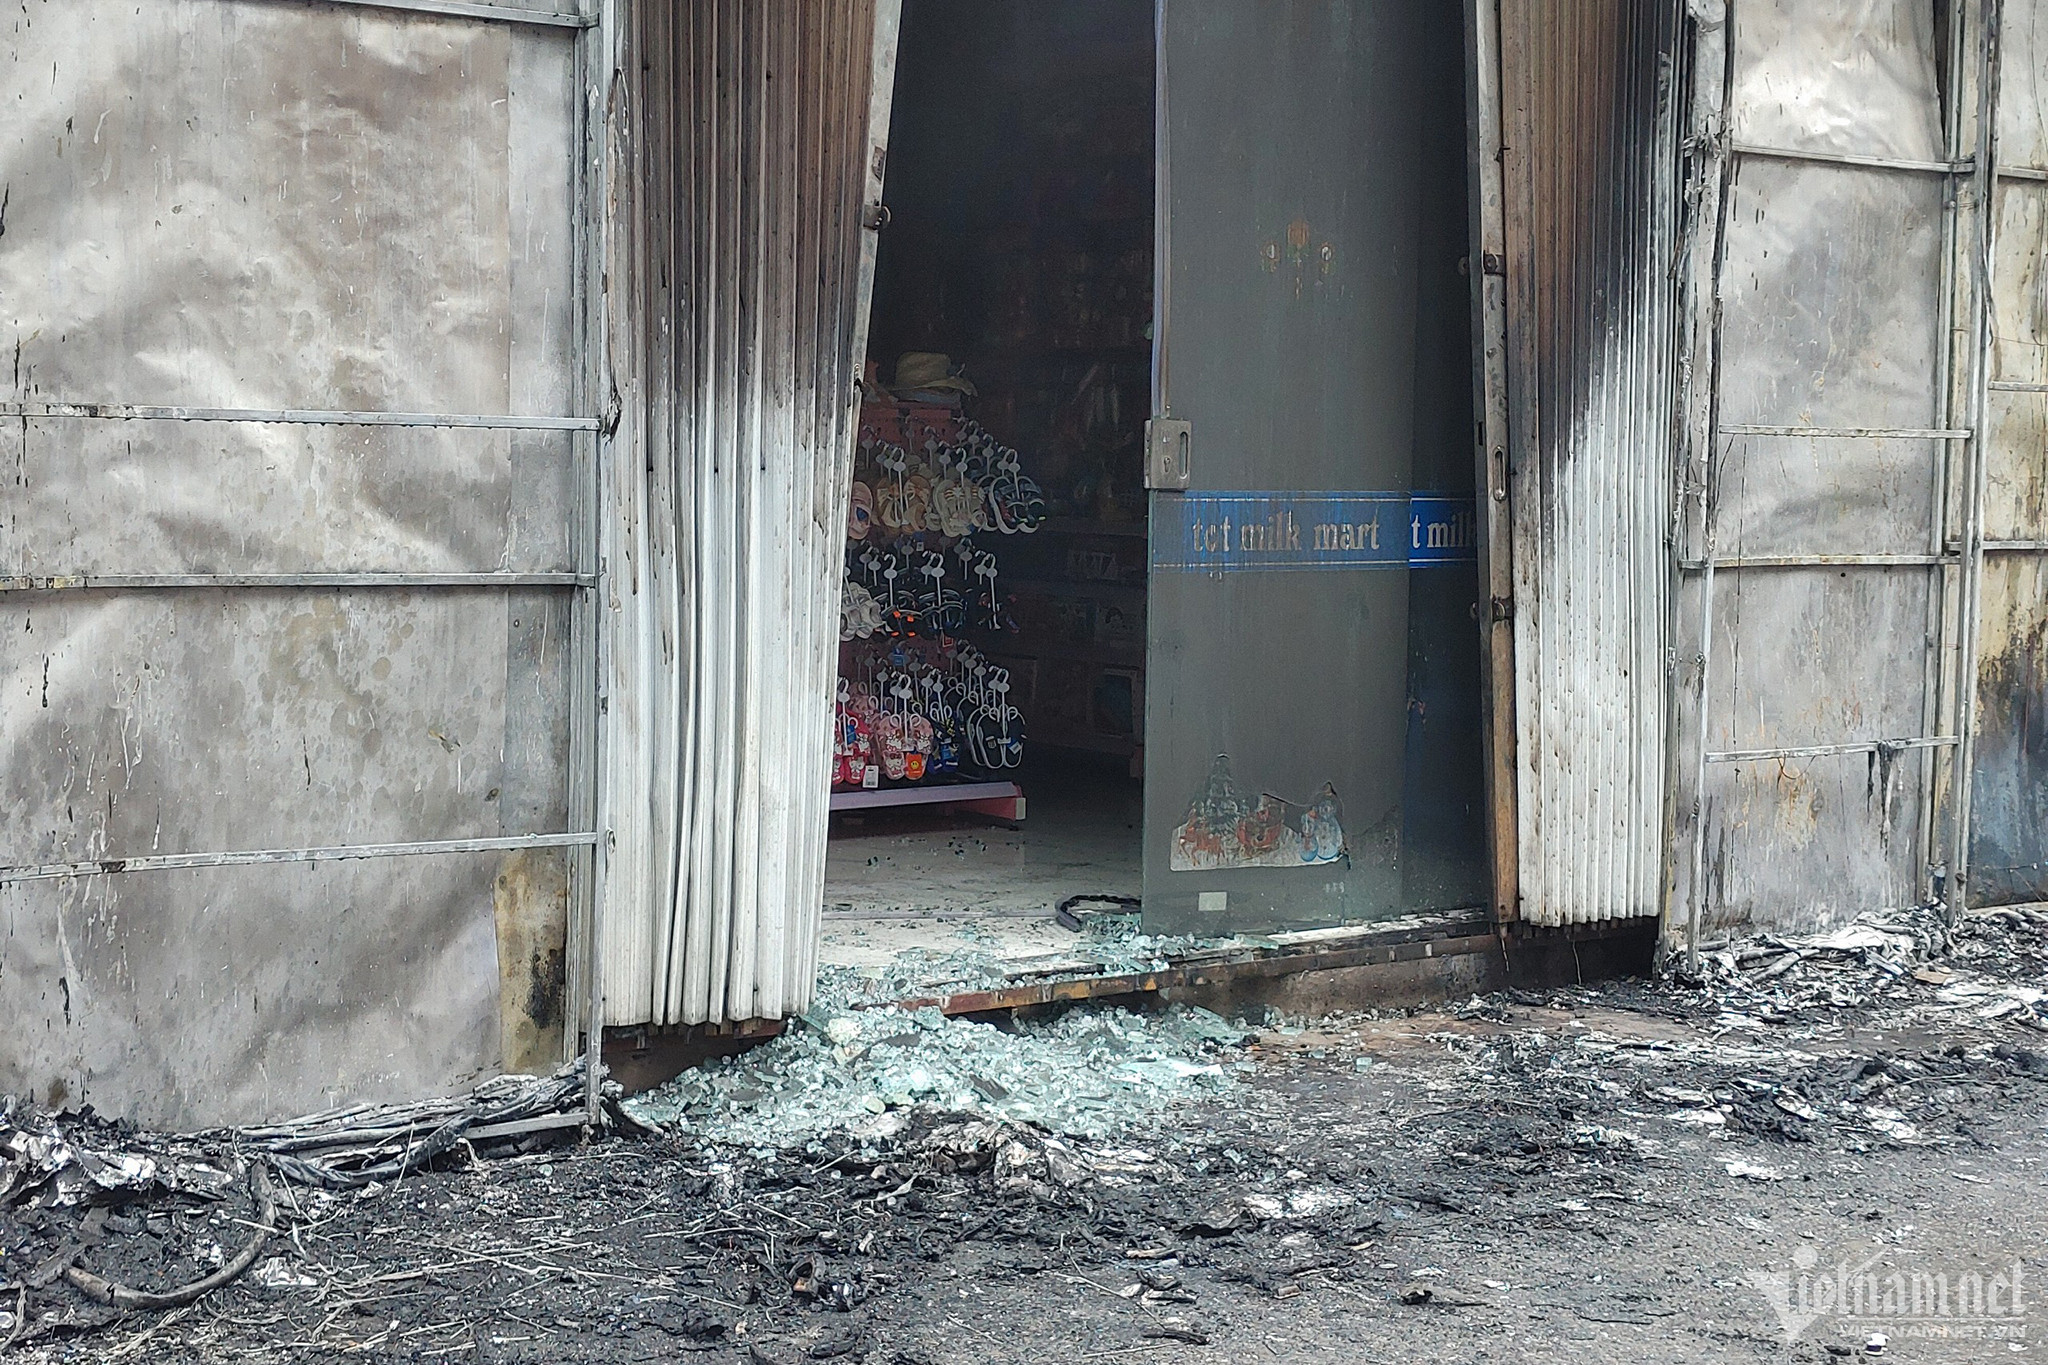 Khói lửa bao trùm mặt tiền dãy ki-ốt ở Hà Nội, người dân hoảng hốt bỏ chạy-4